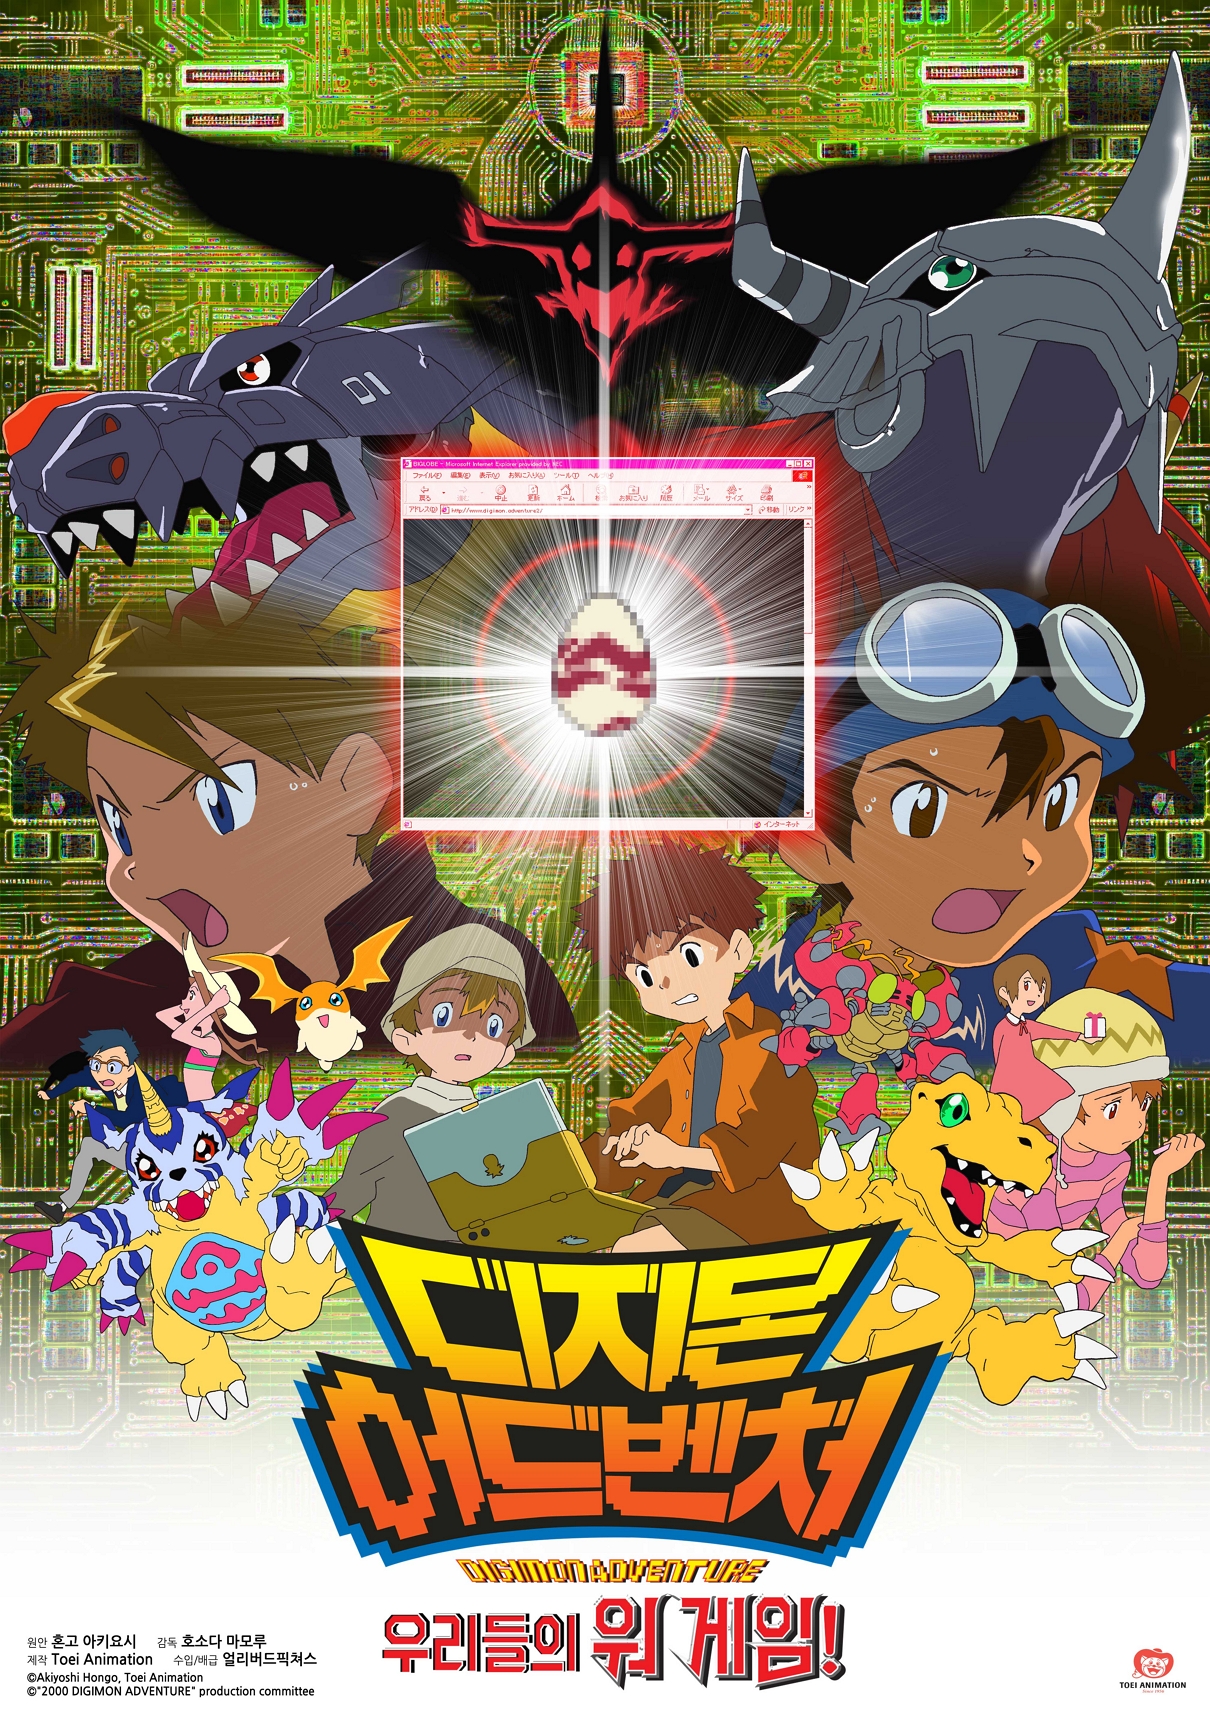 Digimon Adventure (video game) - Wikipedia